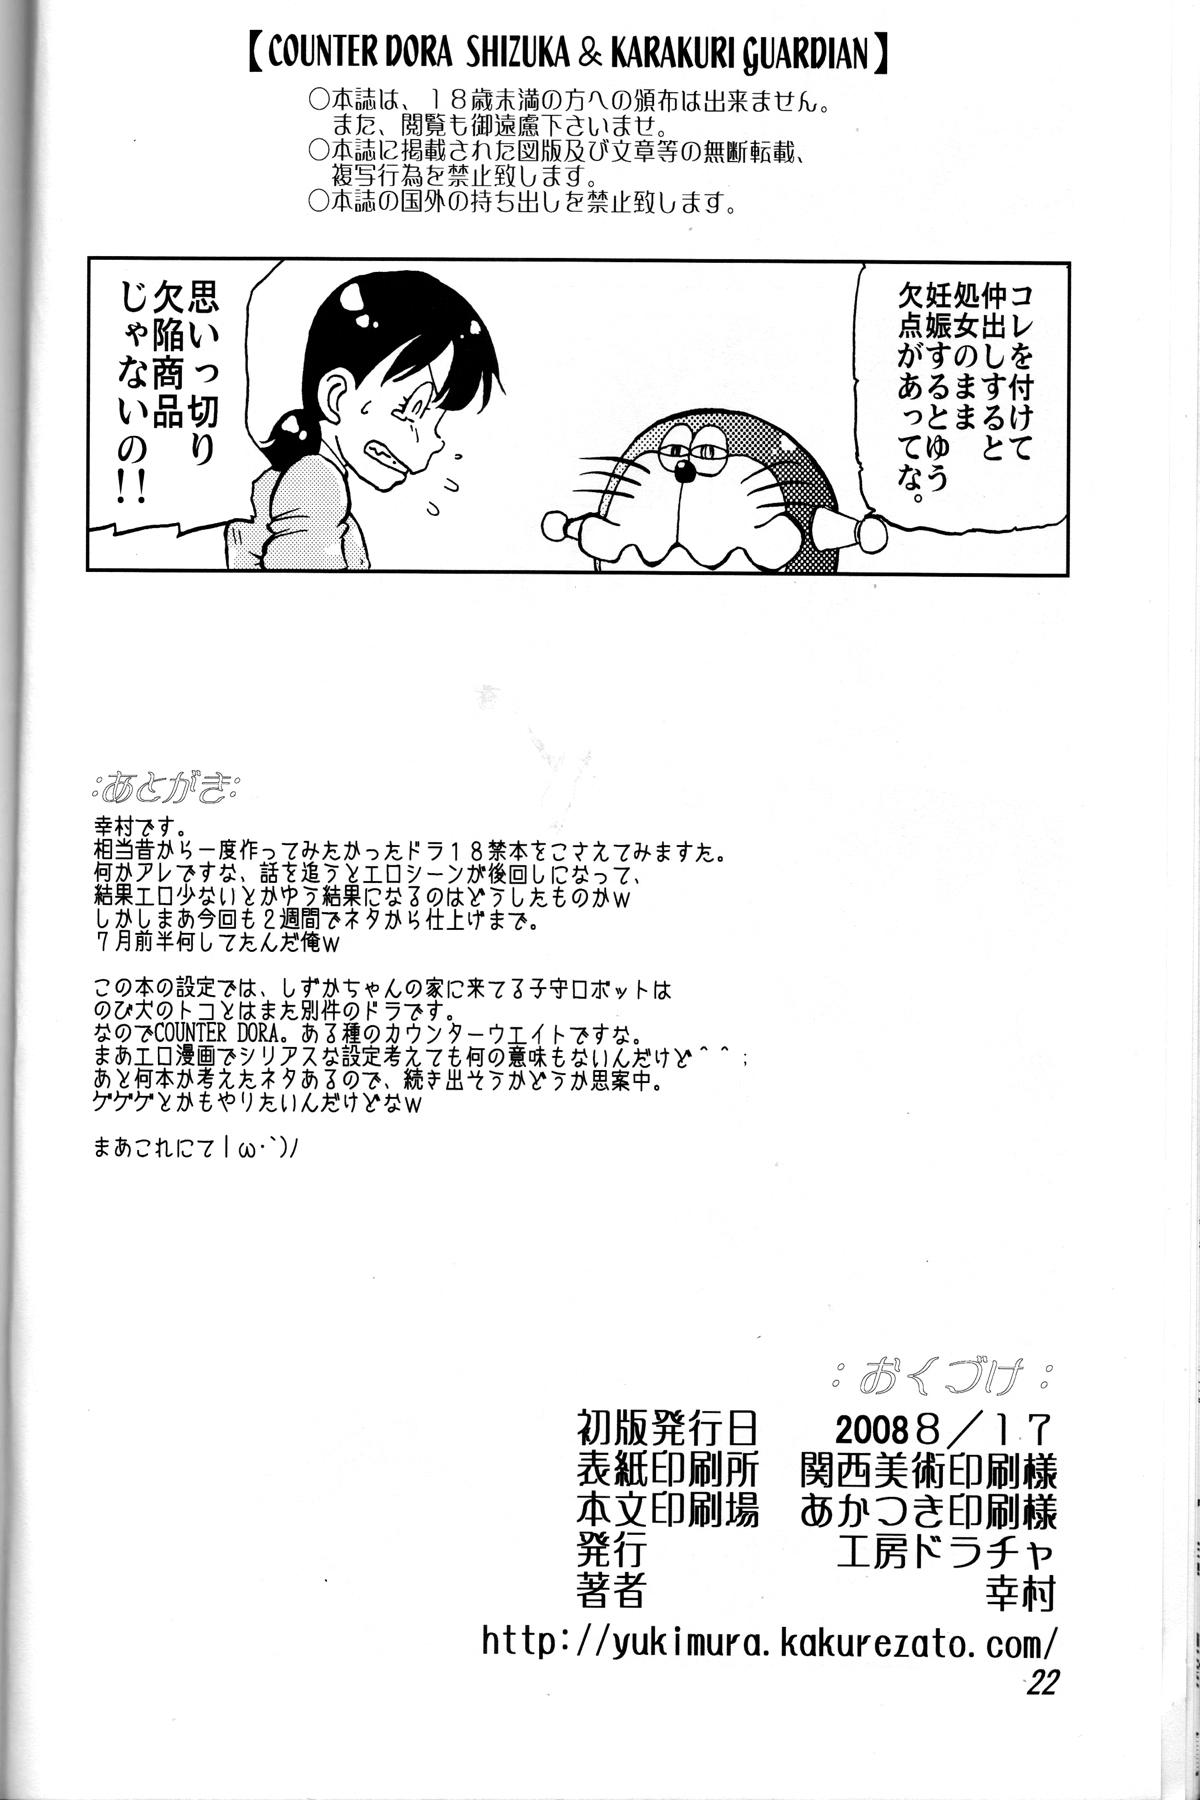 Couple Fucking Shizuka & Kurikuri Guardian - Doraemon Kiteretsu daihyakka Egypt - Page 22